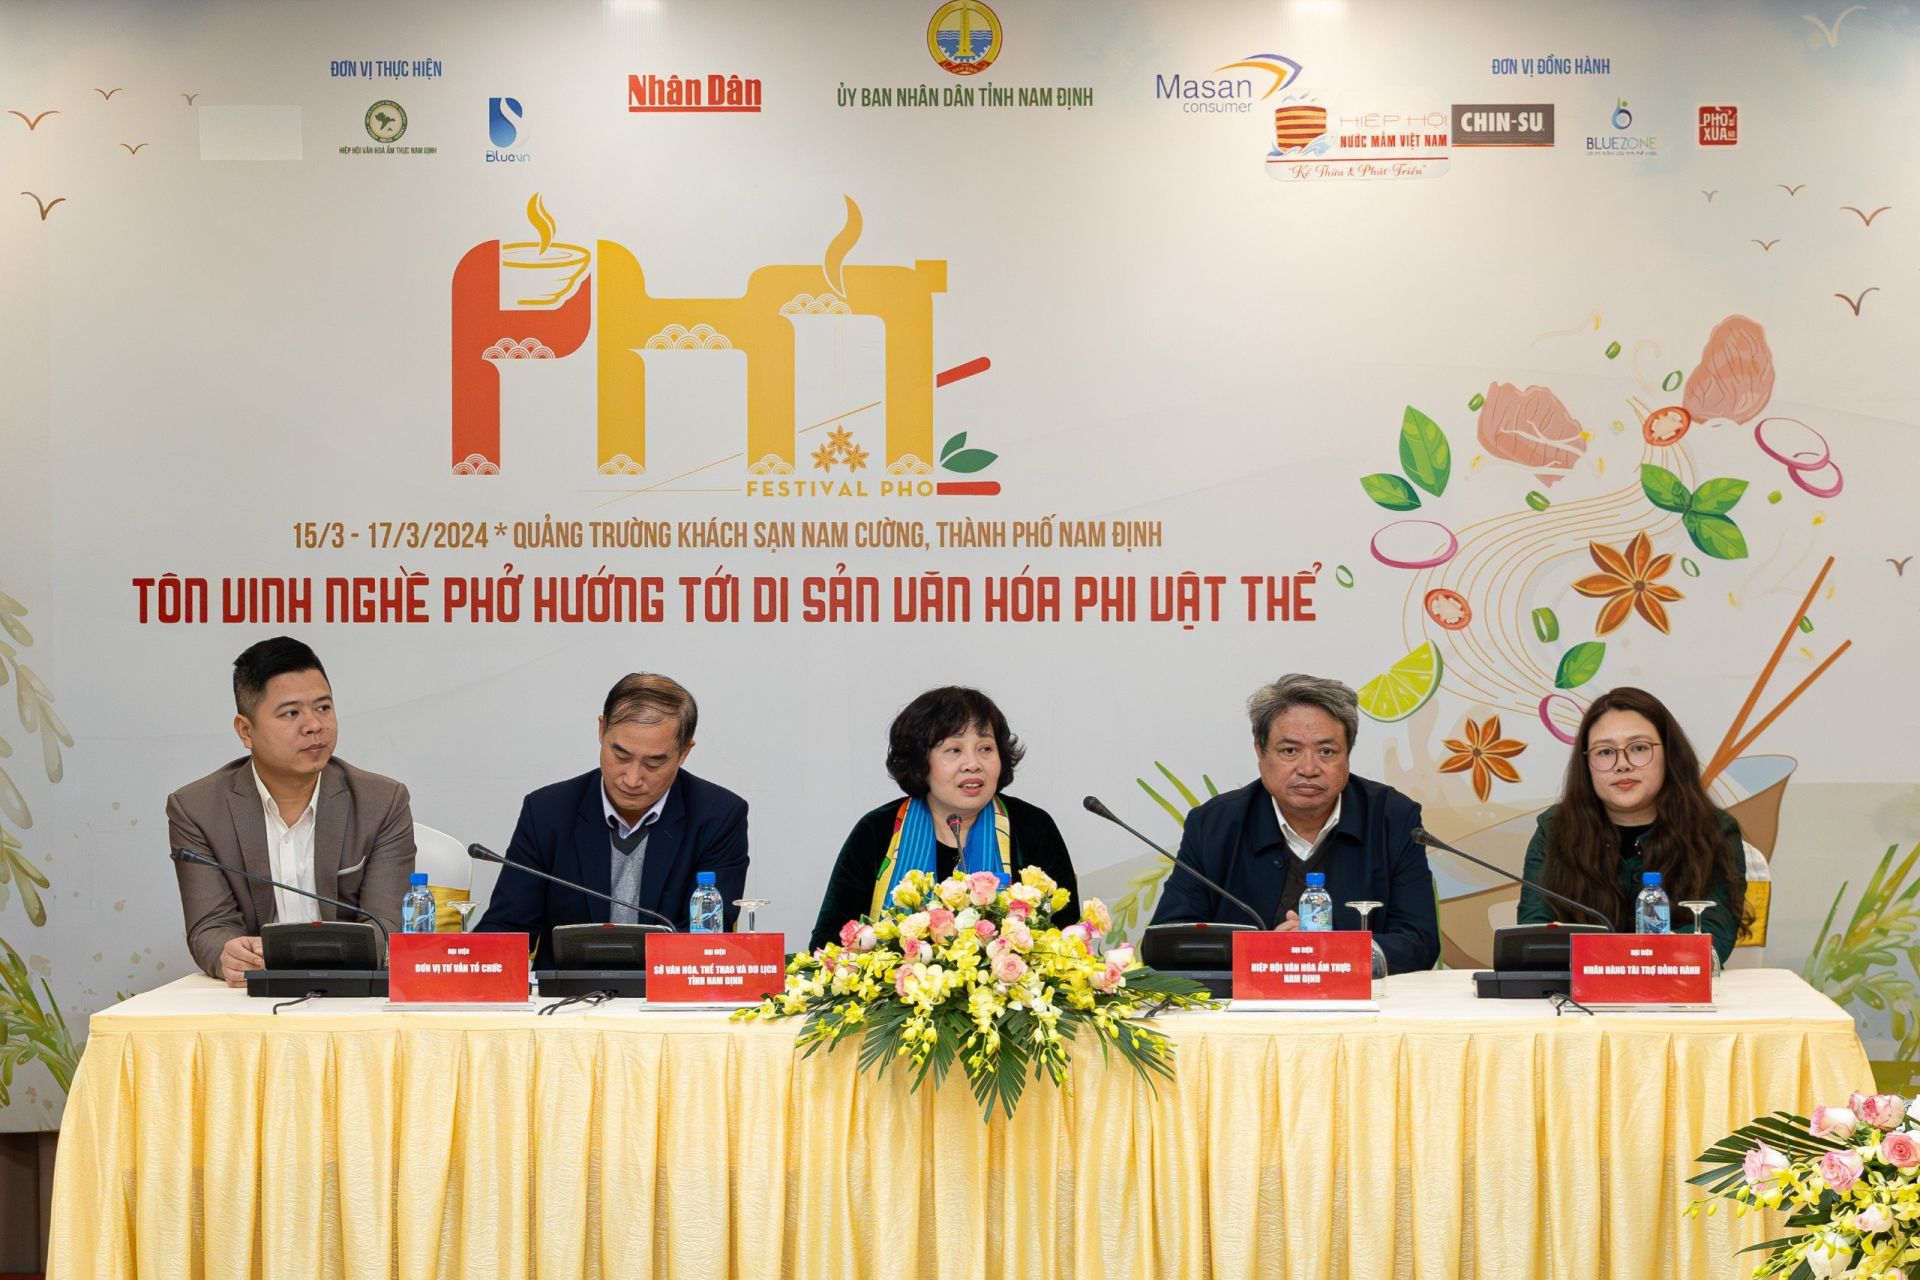 Thông tin về Festival Phở 2024 được công bố tại họp báo tổ chức chiều 29/2 tại Hà Nội.